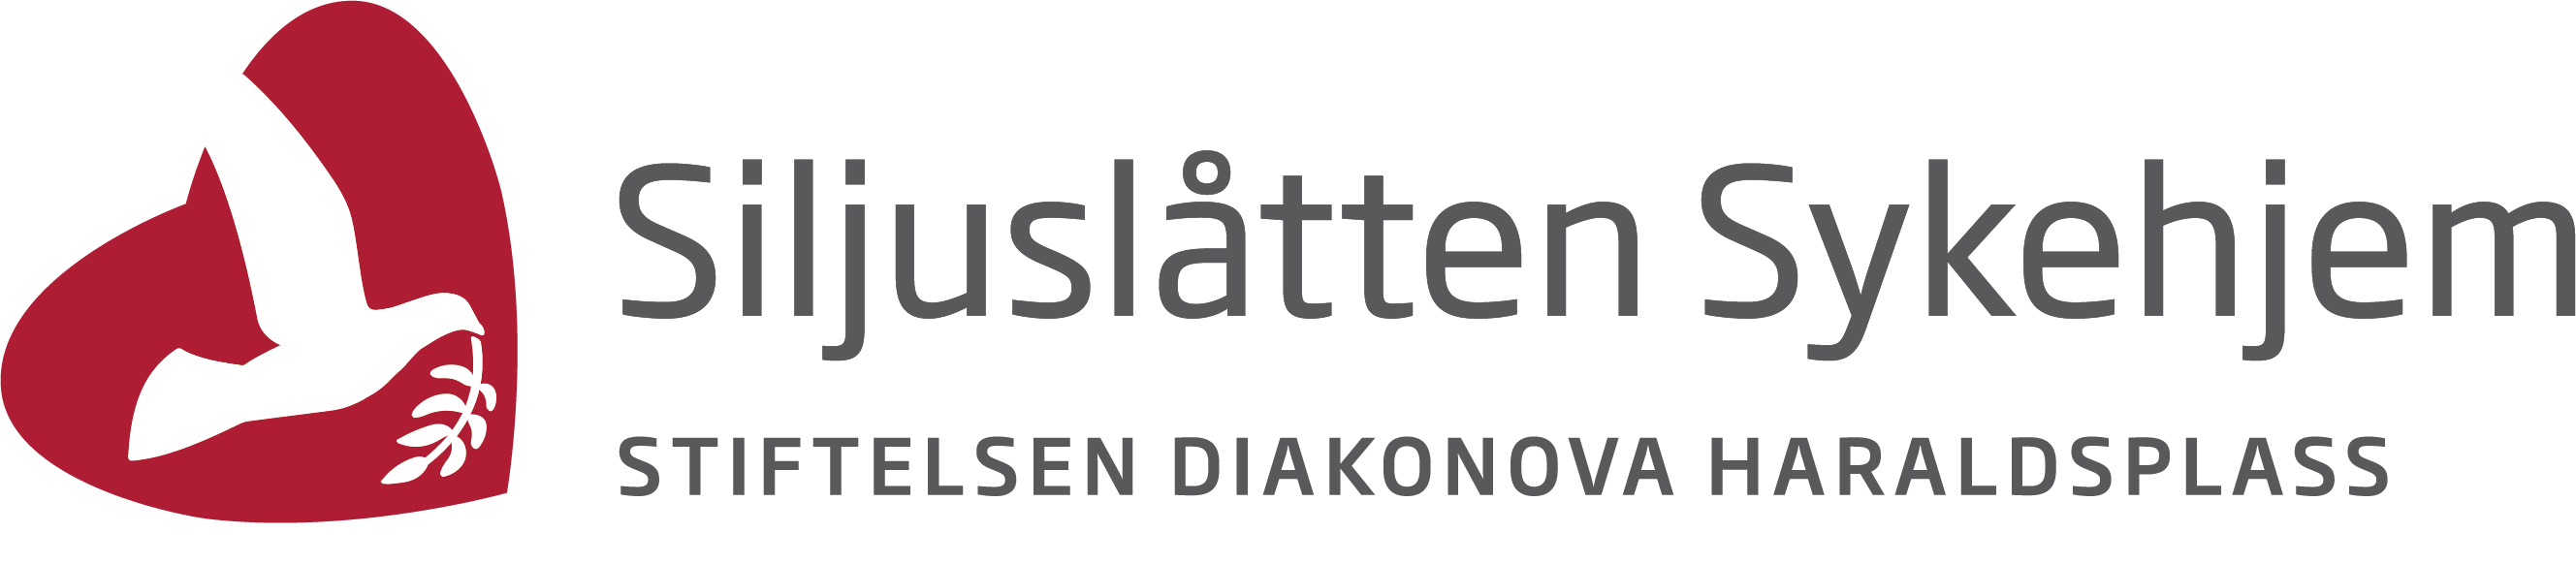 Siljuslåtten Sykehjem logo